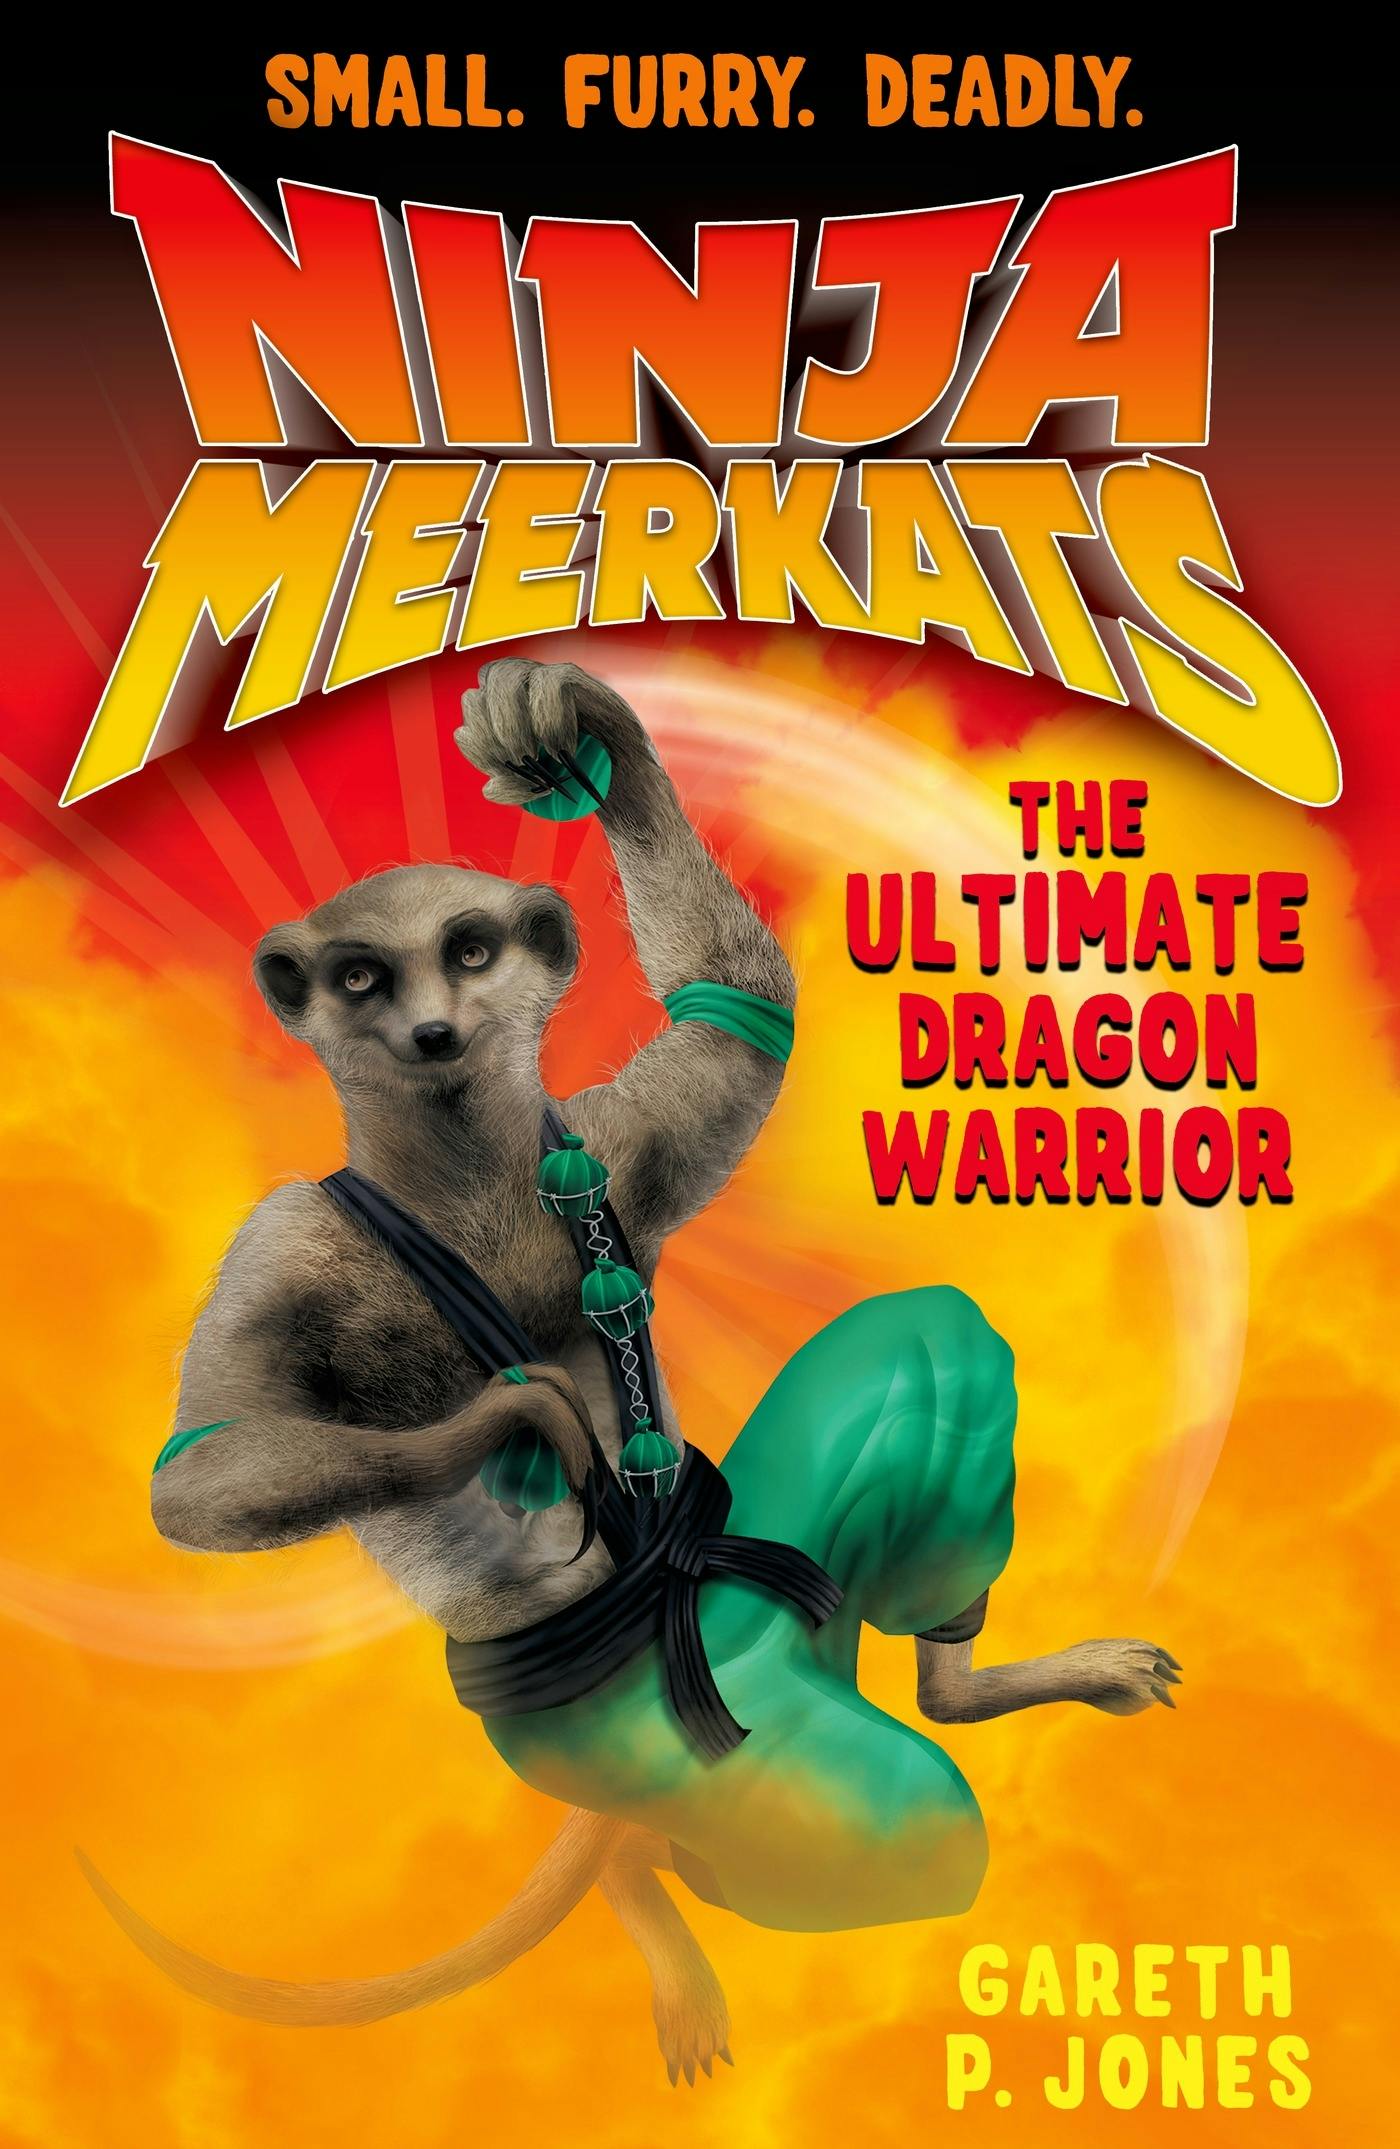 Ninja Meerkats (#7) The Ultimate Dragon Warrior